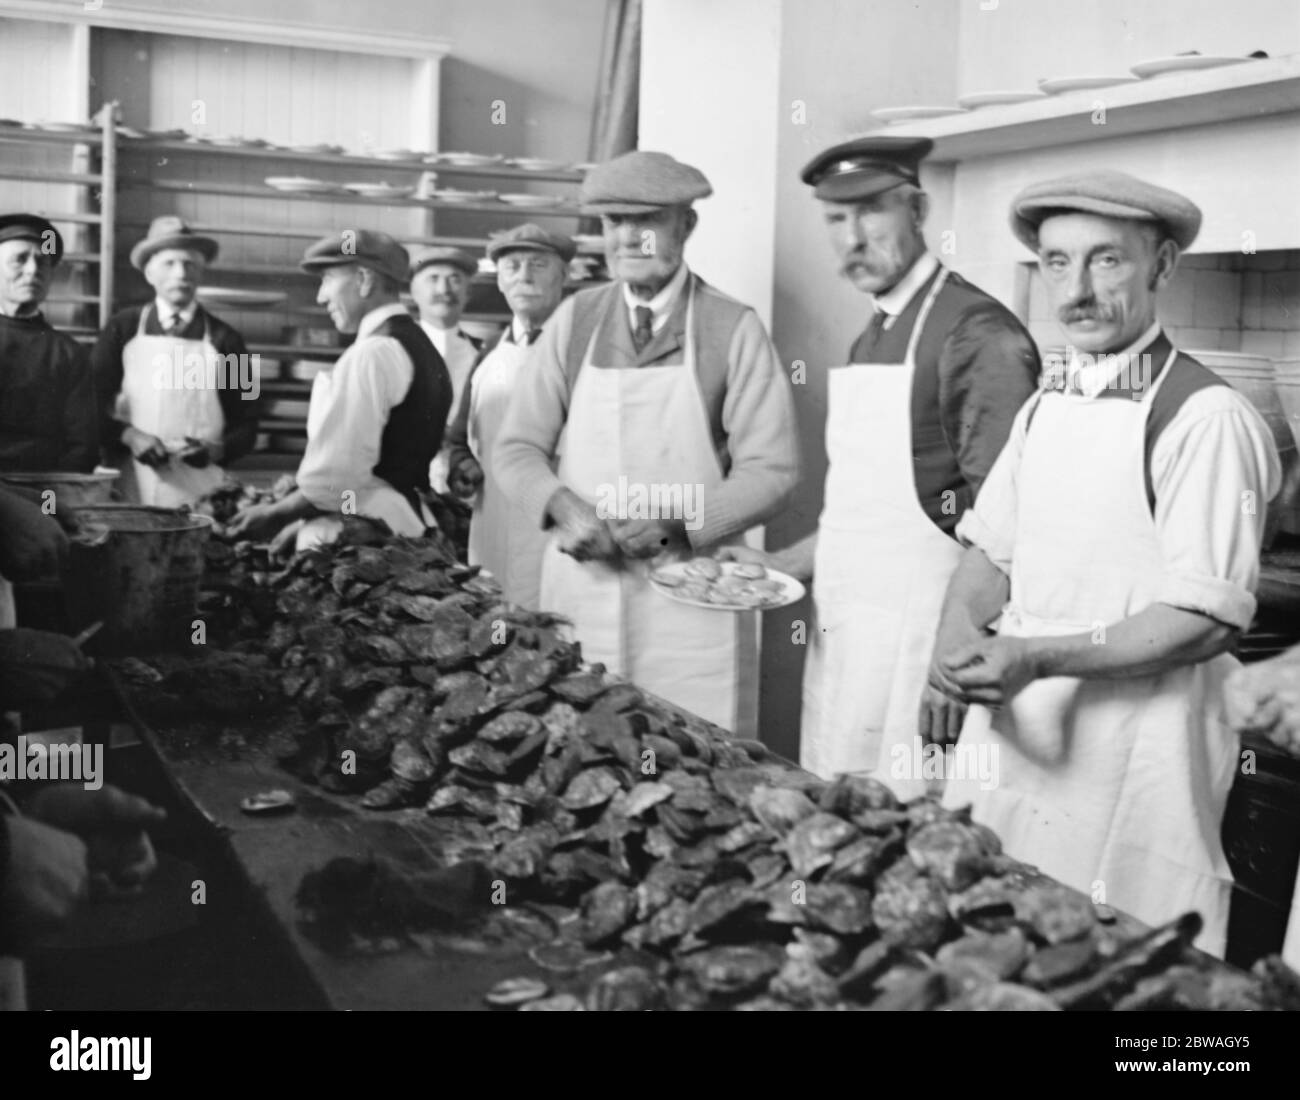 Colchester - une armée d'hommes a été employée pour ouvrir des huîtres pour la fête annuelle du 19 octobre 1922 Banque D'Images